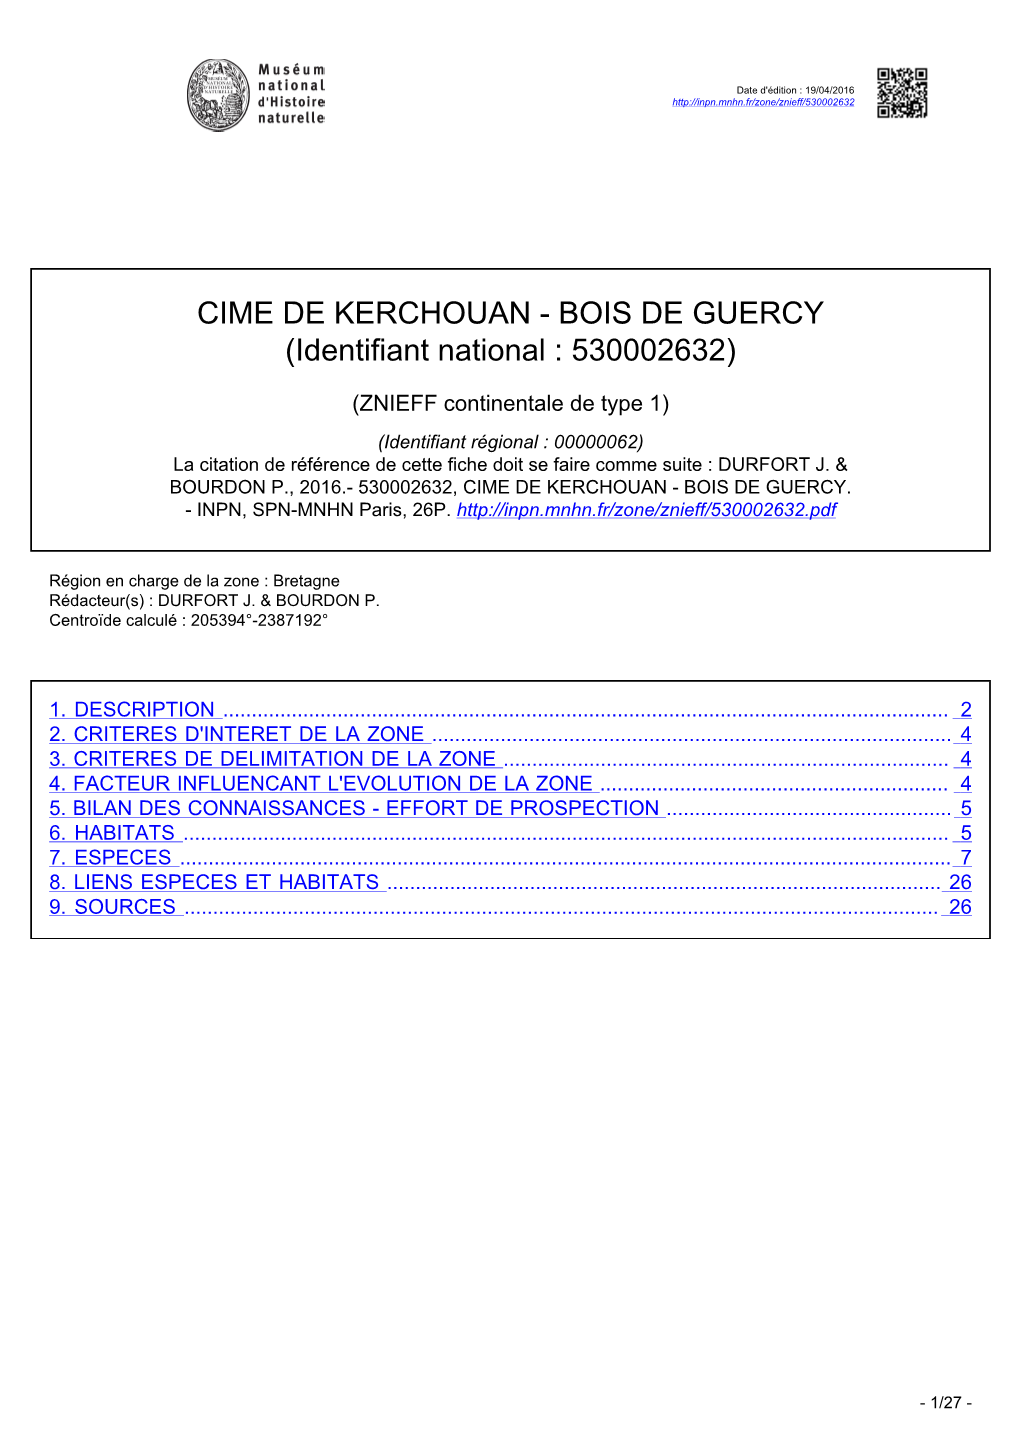 CIME DE KERCHOUAN - BOIS DE GUERCY (Identifiant National : 530002632)